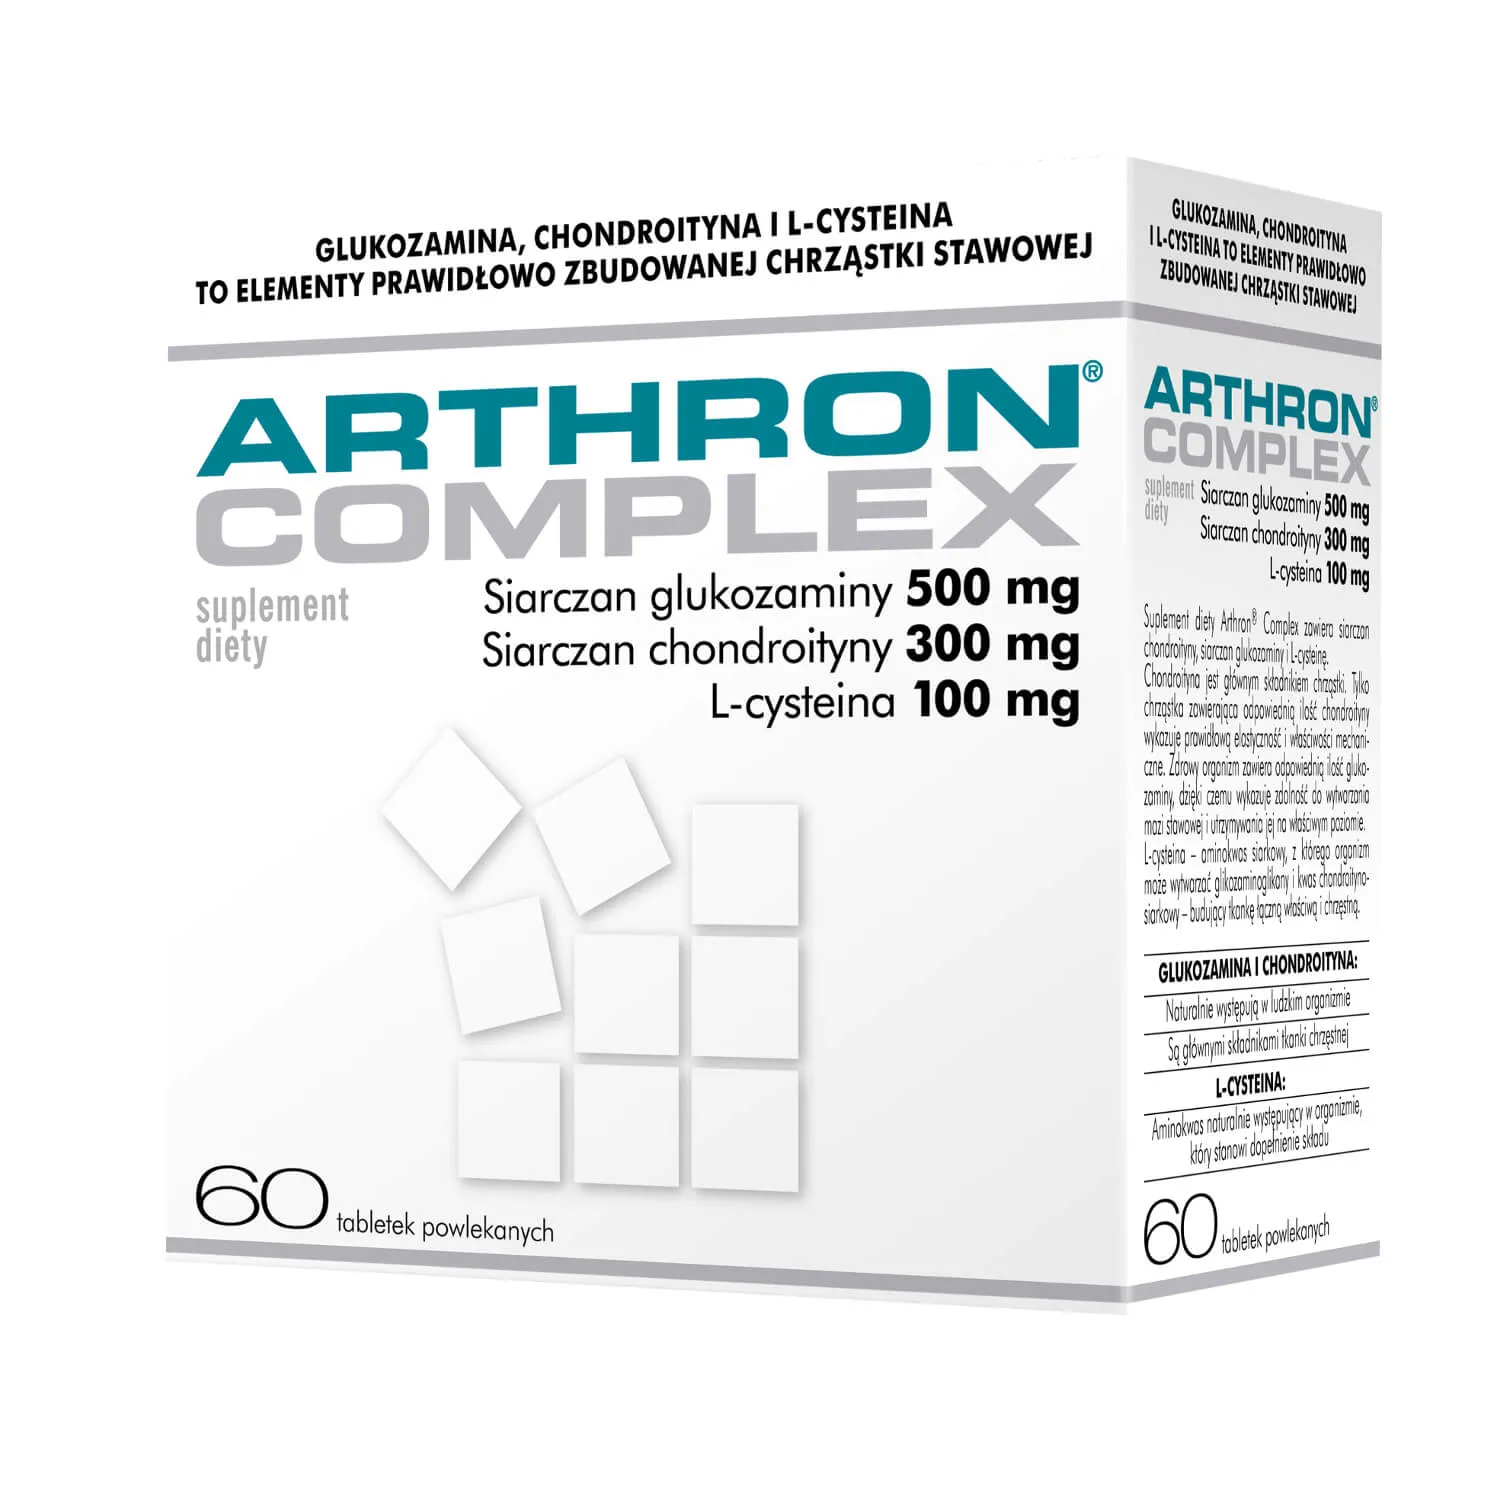 Arthron Complex, suplement diety, 60 tabletek